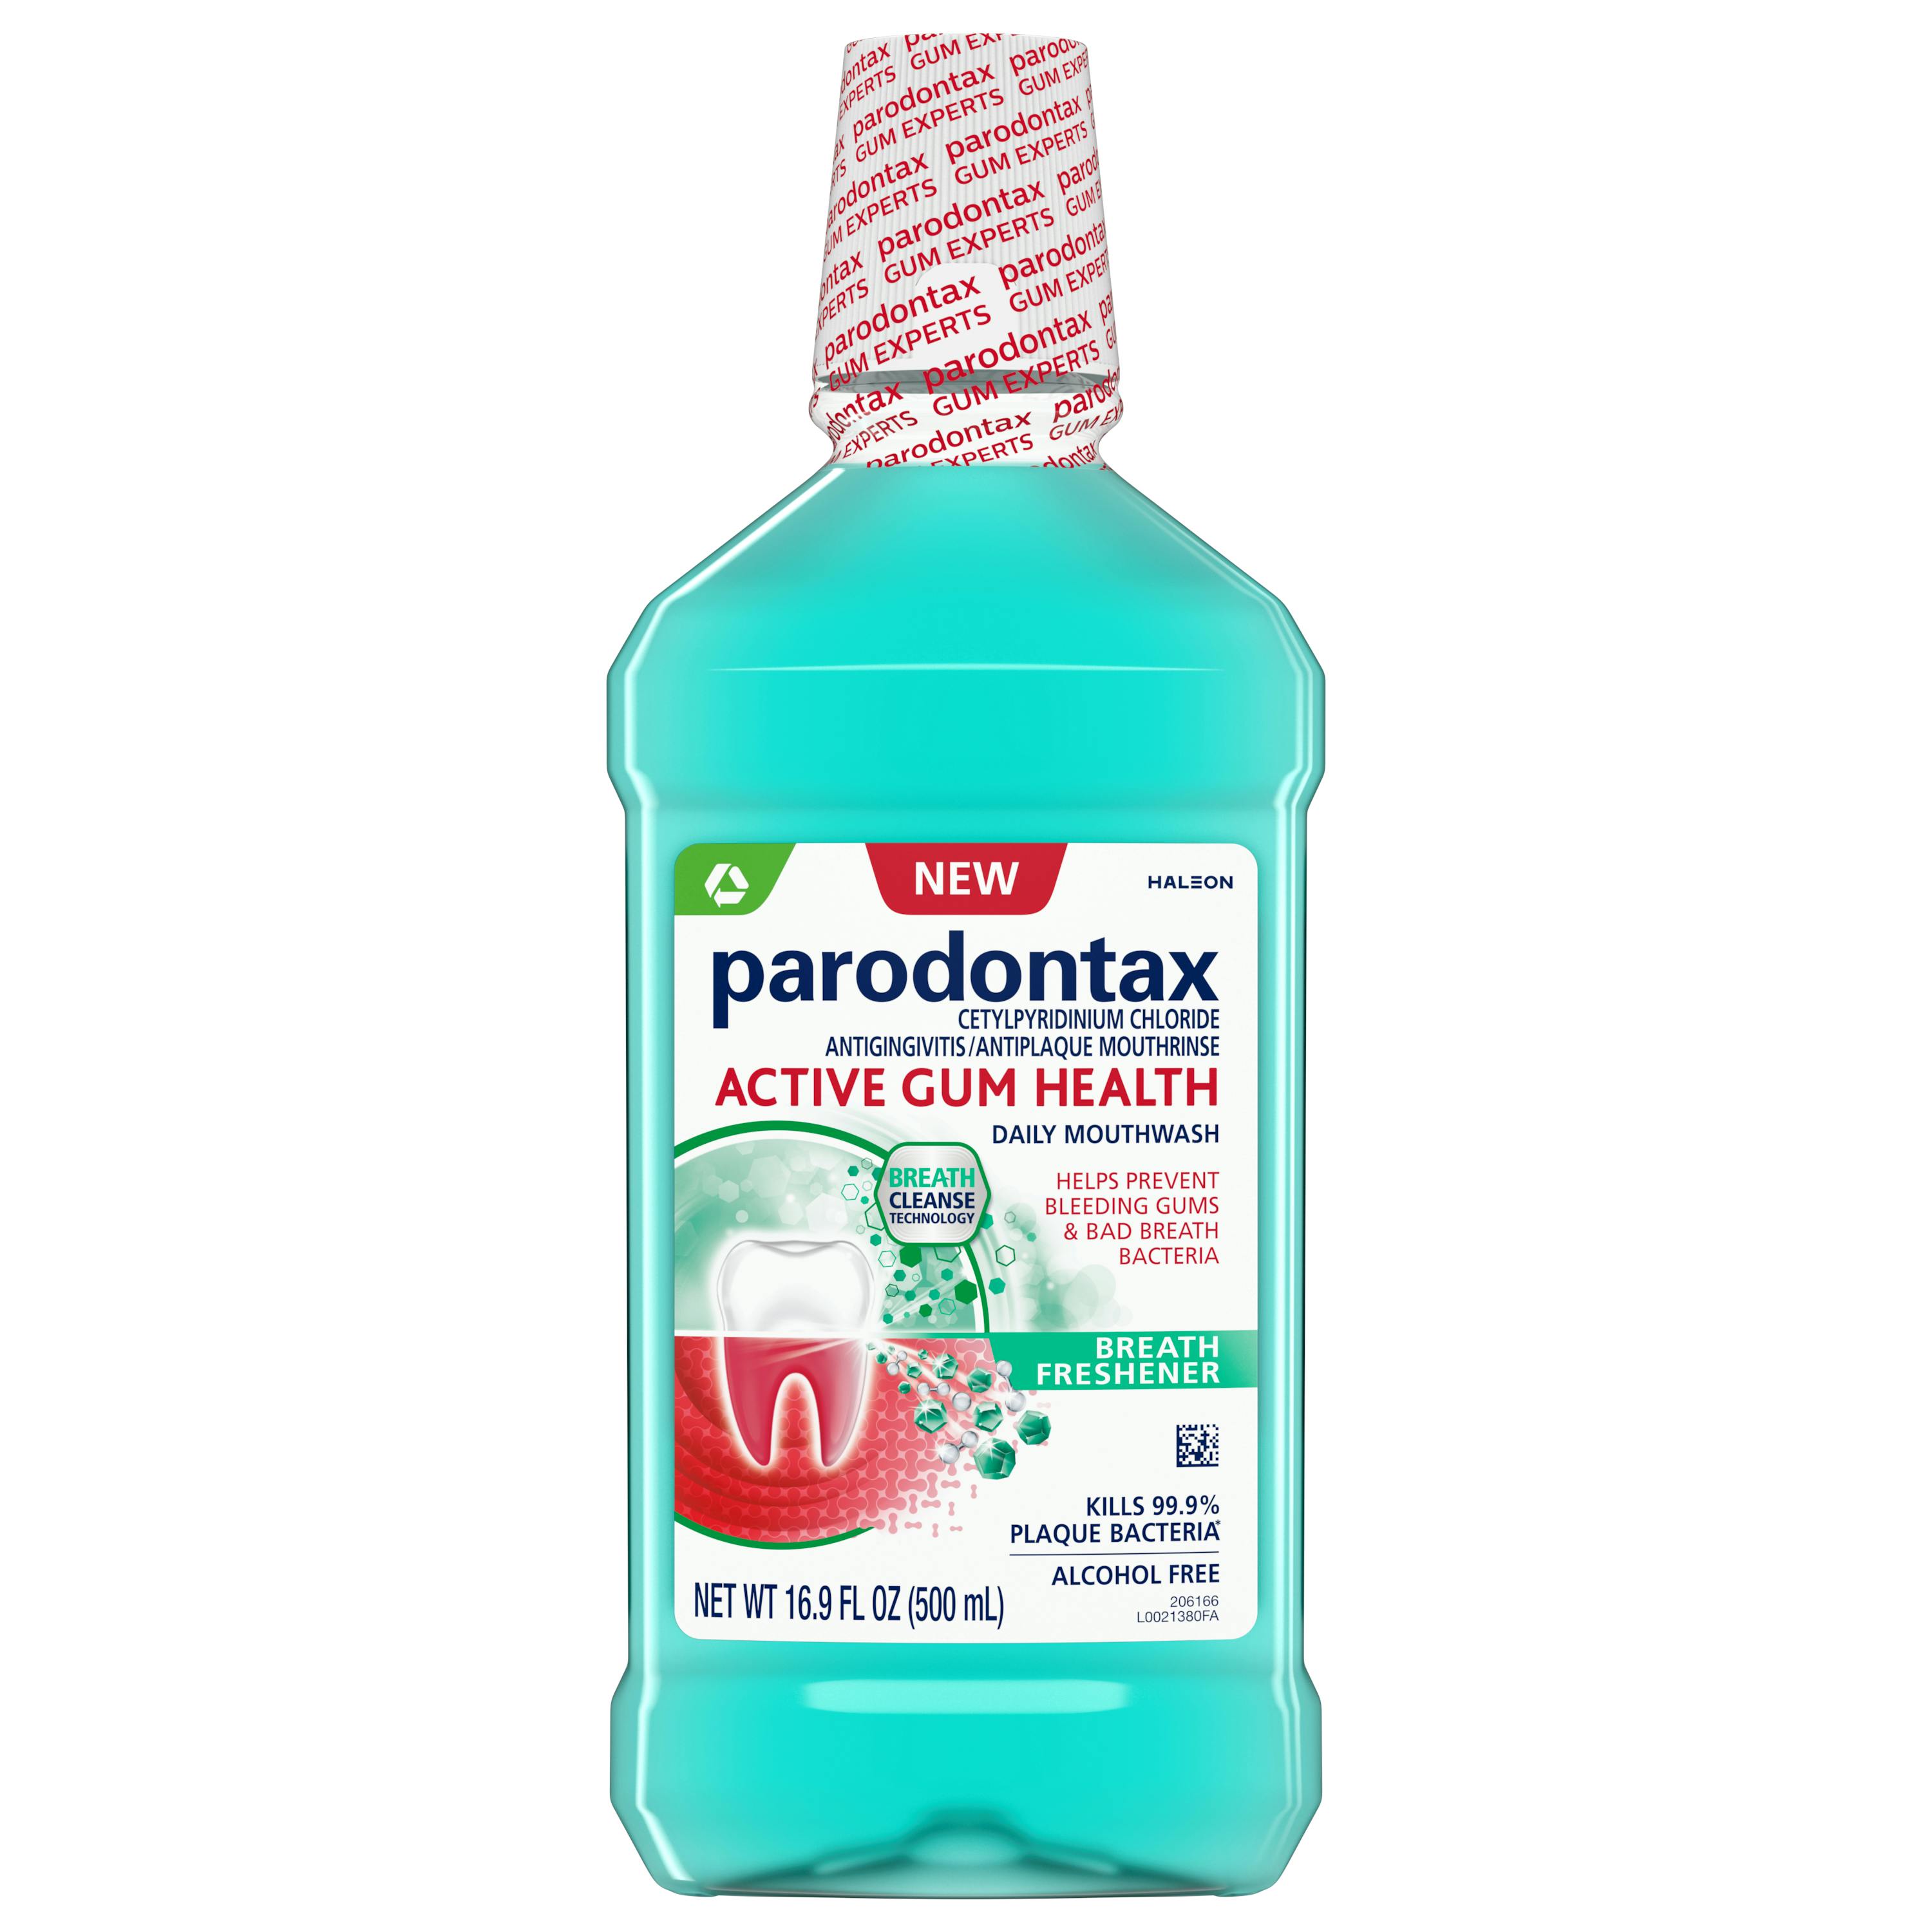 parodontax Active Gum Health Breath Freshener Mouthwash 